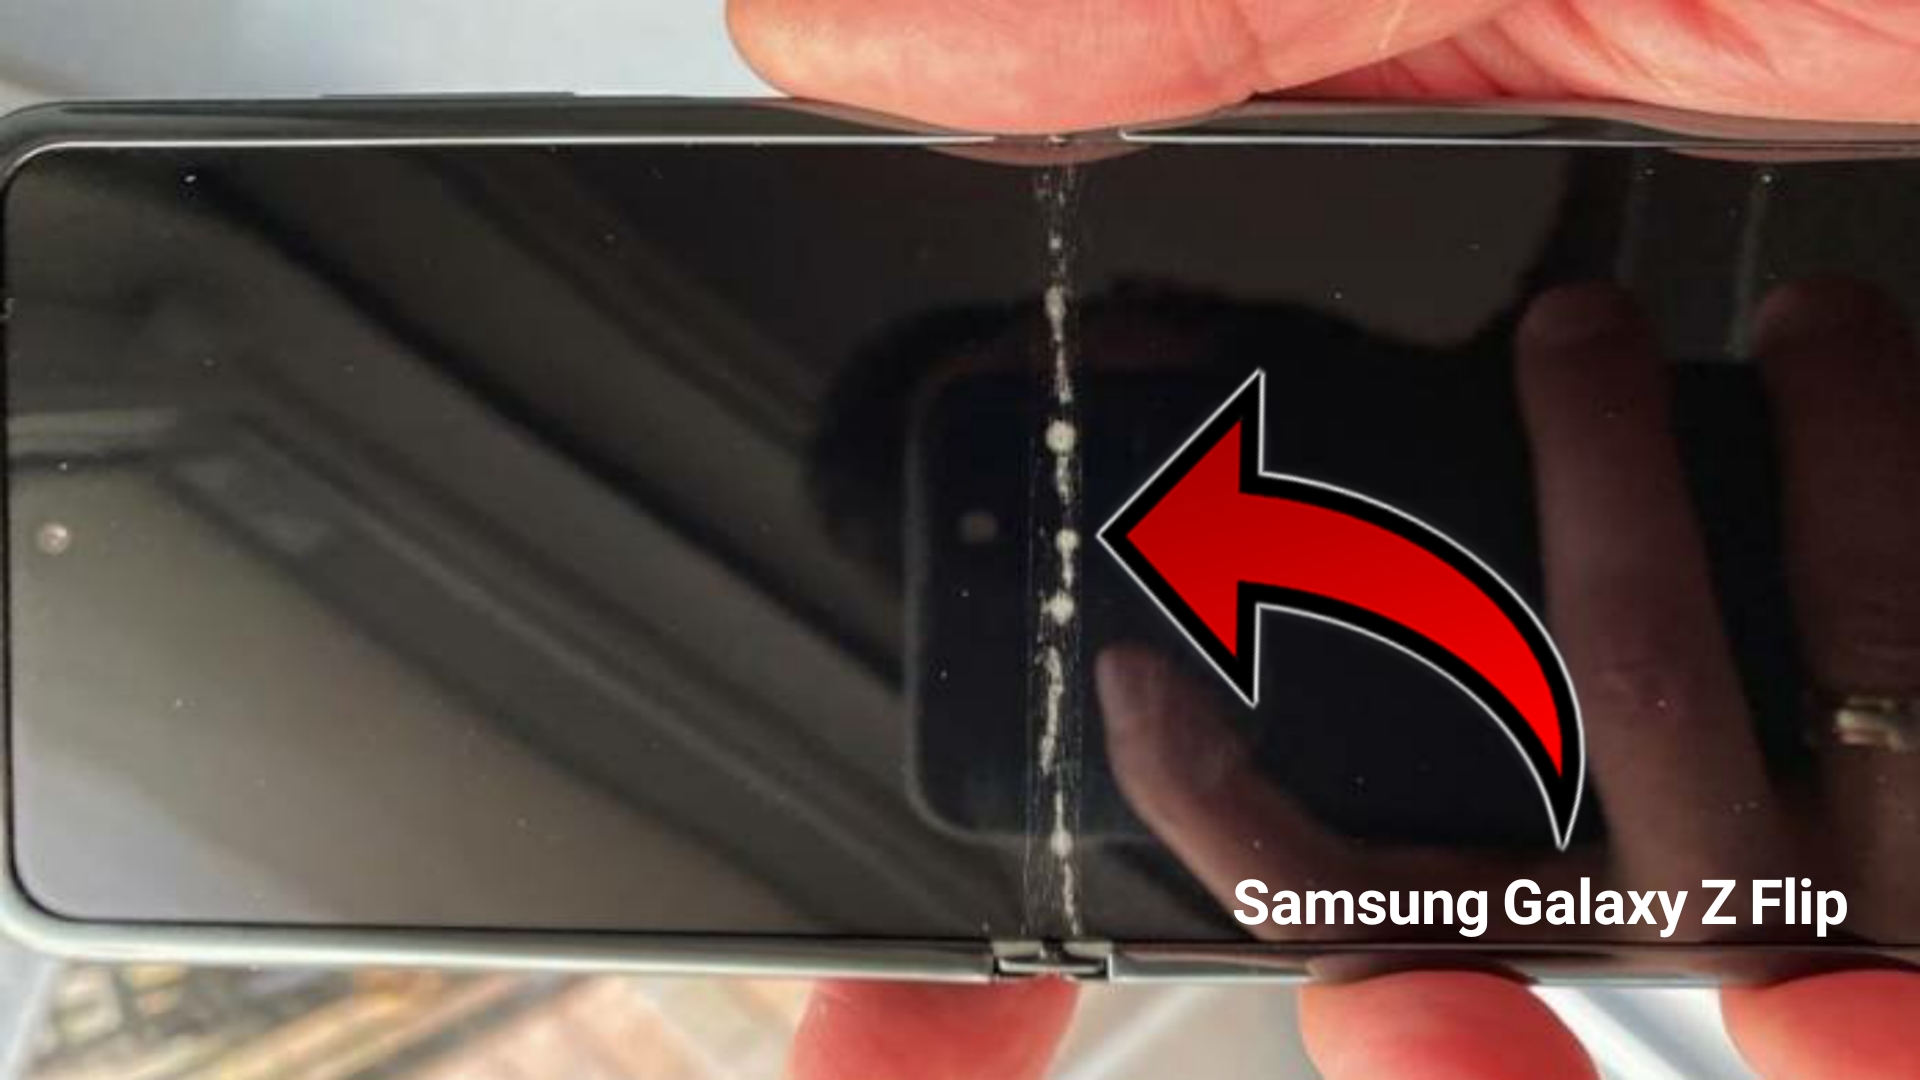 ظهور صور لهاتف Samsung Galaxy Z Flip القابل للطي تبين تشقق طبقة الحماية بشكل واضح